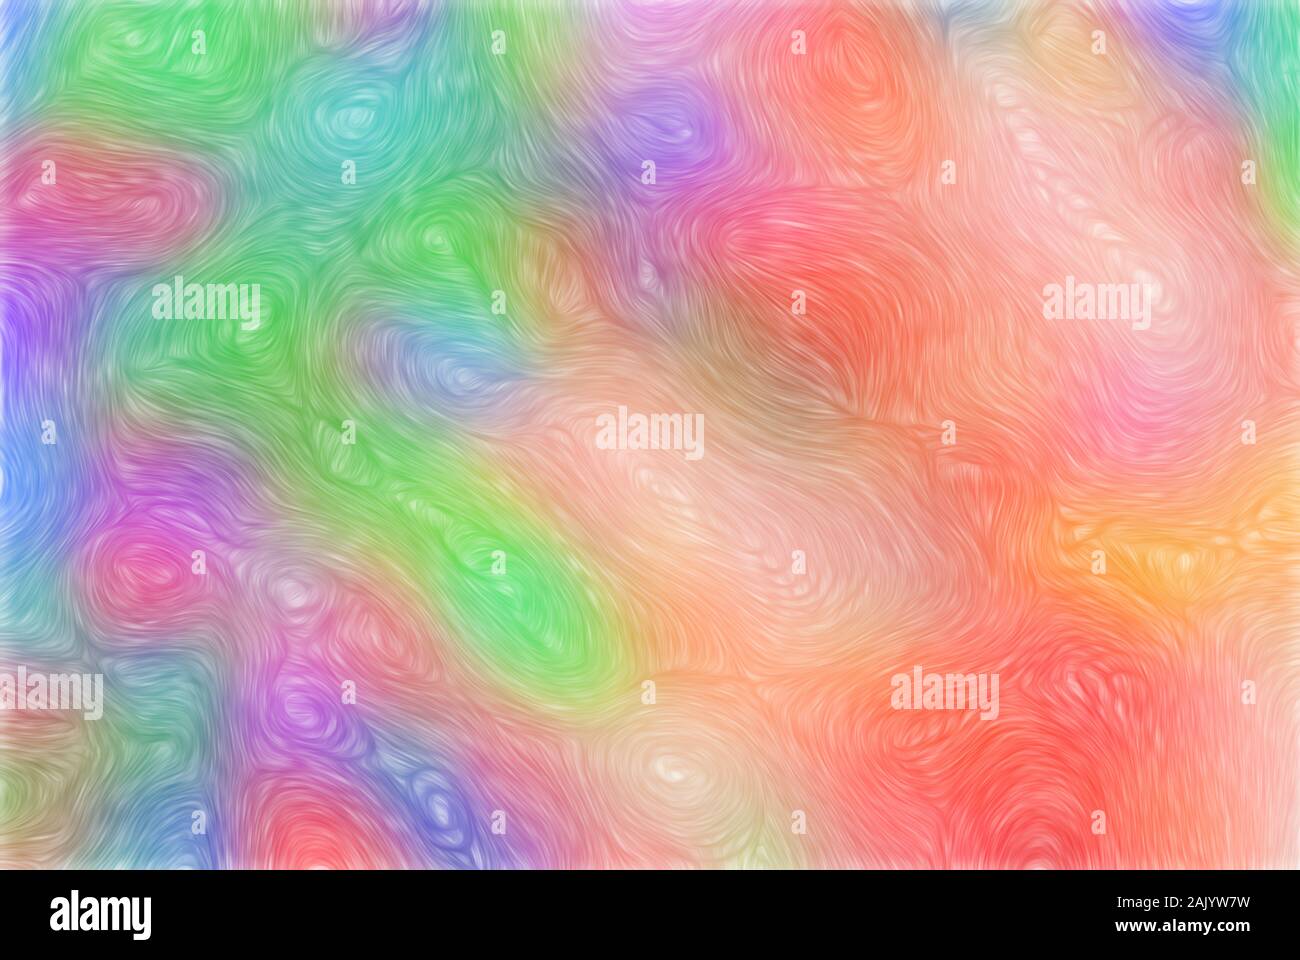 Strukturierte Wirkung Leinwand Hintergrund in Aquarell. Dies ist vom Computer generierte Art. Stockfoto